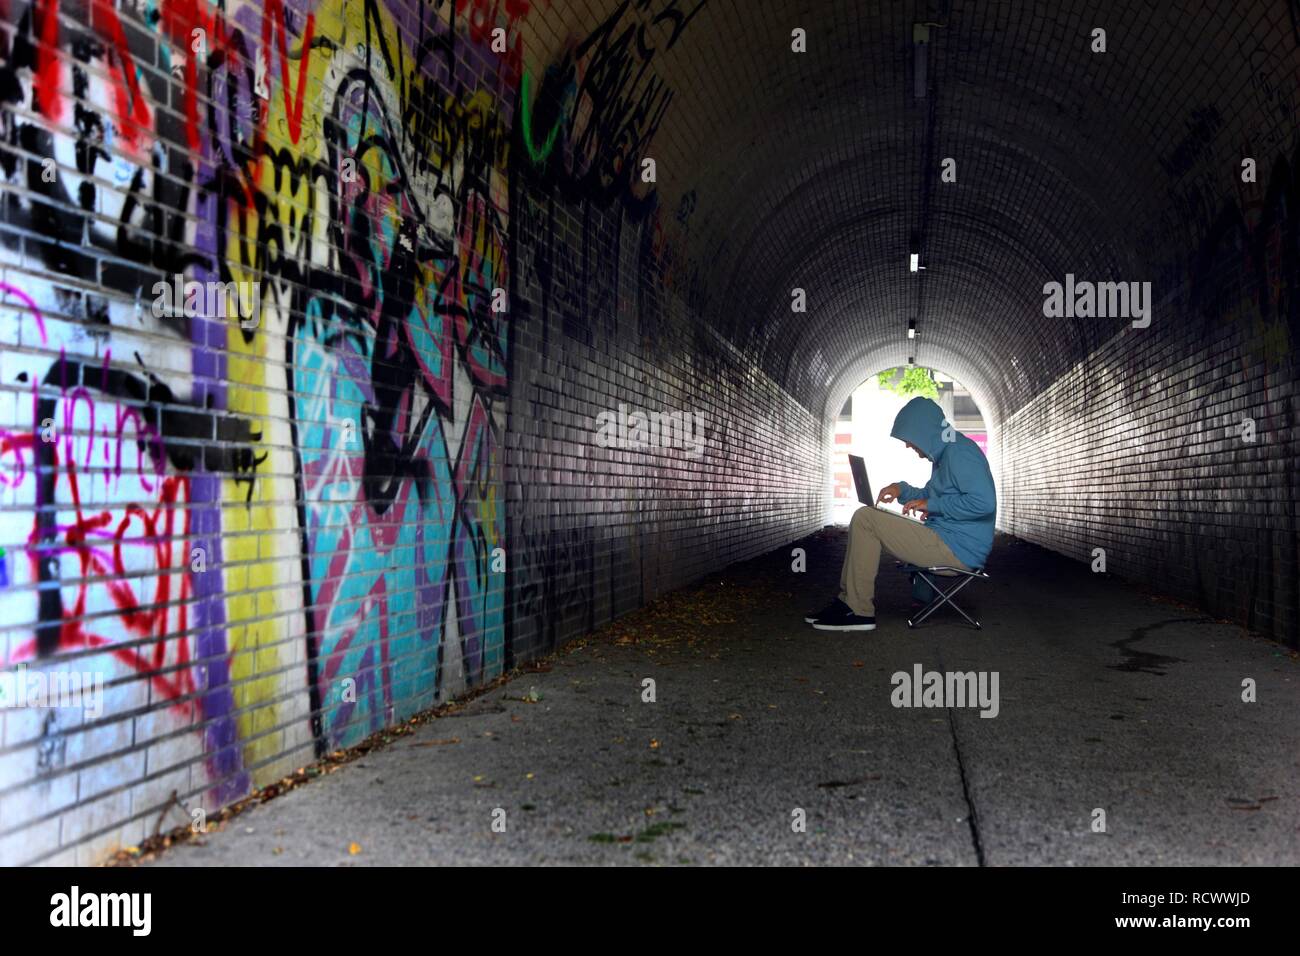 El hombre navegando en un ordenador portátil en un túnel peatonal, imagen simbólica para la piratería informática, los delitos informáticos, cibercriminalidad Foto de stock